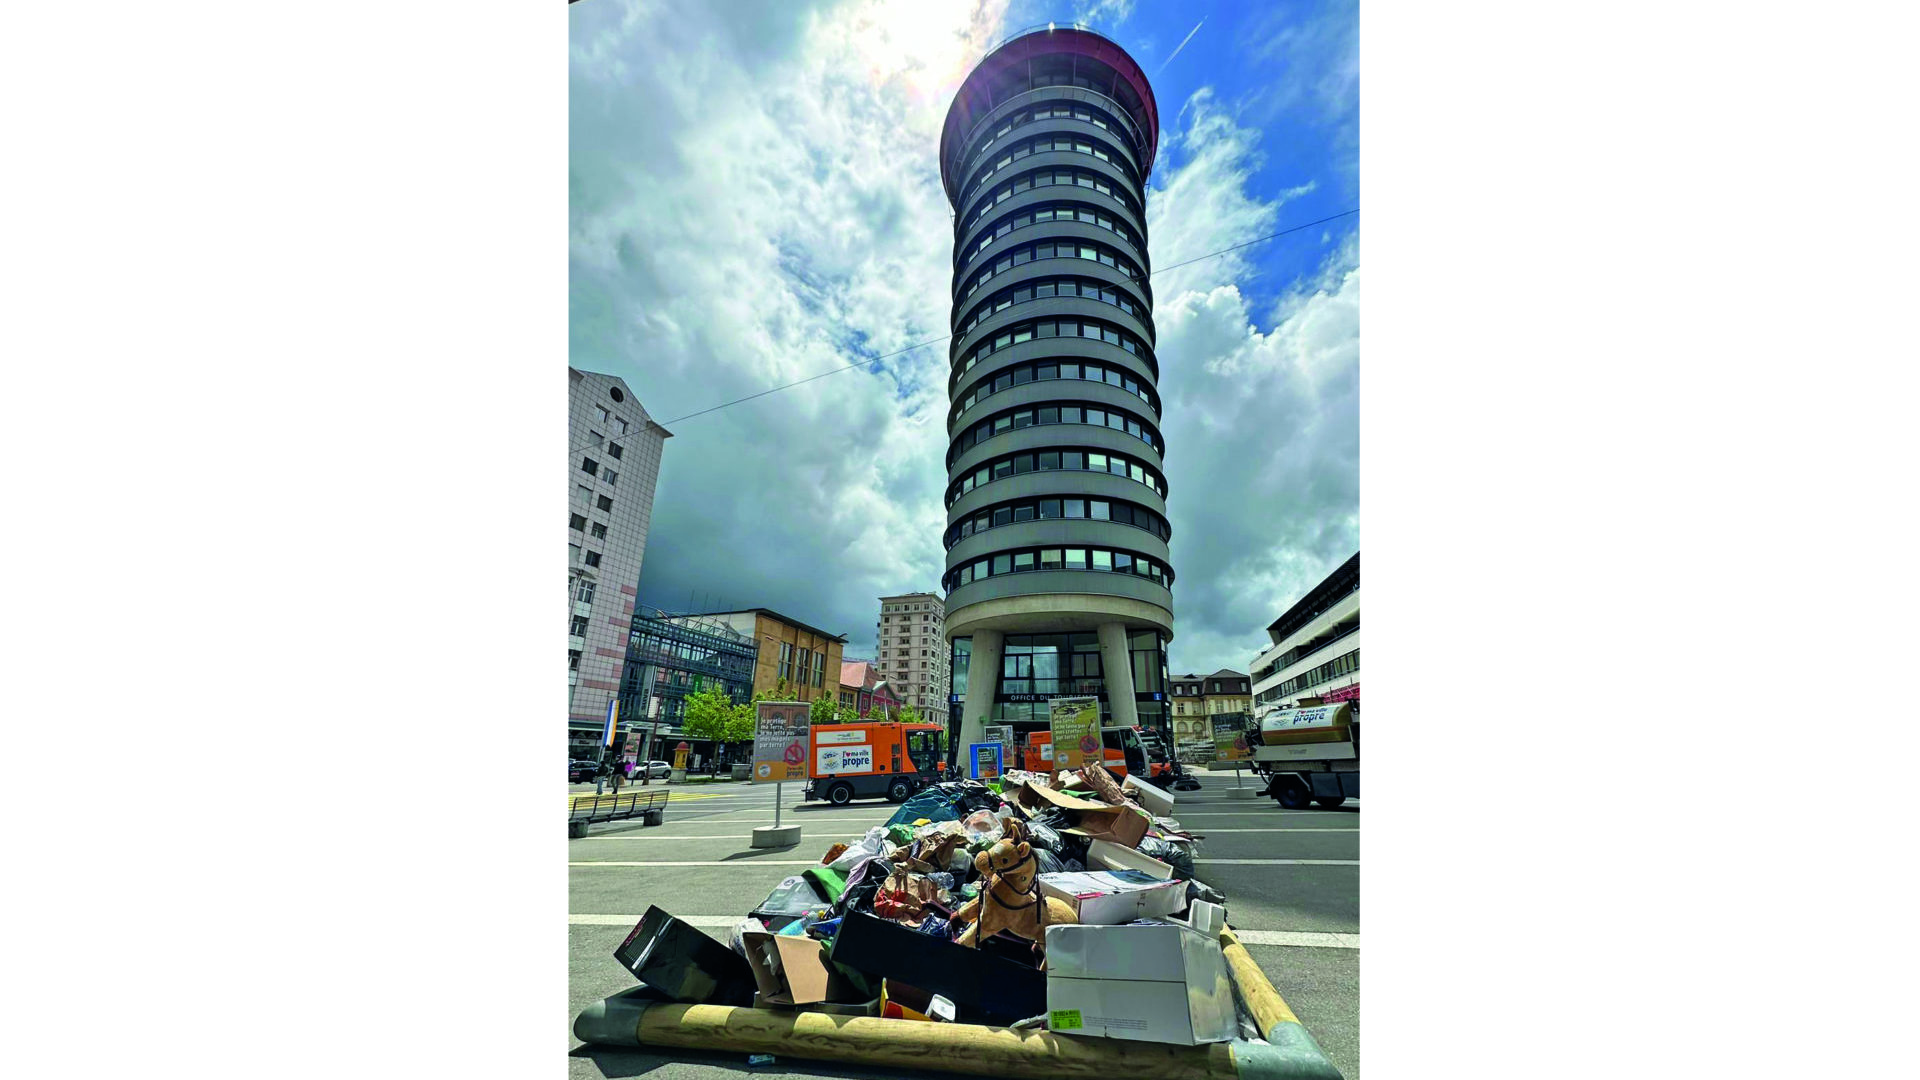 Stop aux déchets sauvages ! Départ choc pour la campagne de la Ville de La Chaux-de-Fonds, avec un tas place Espacité de la récolte d’un jour de littering ordinaire… (gs)